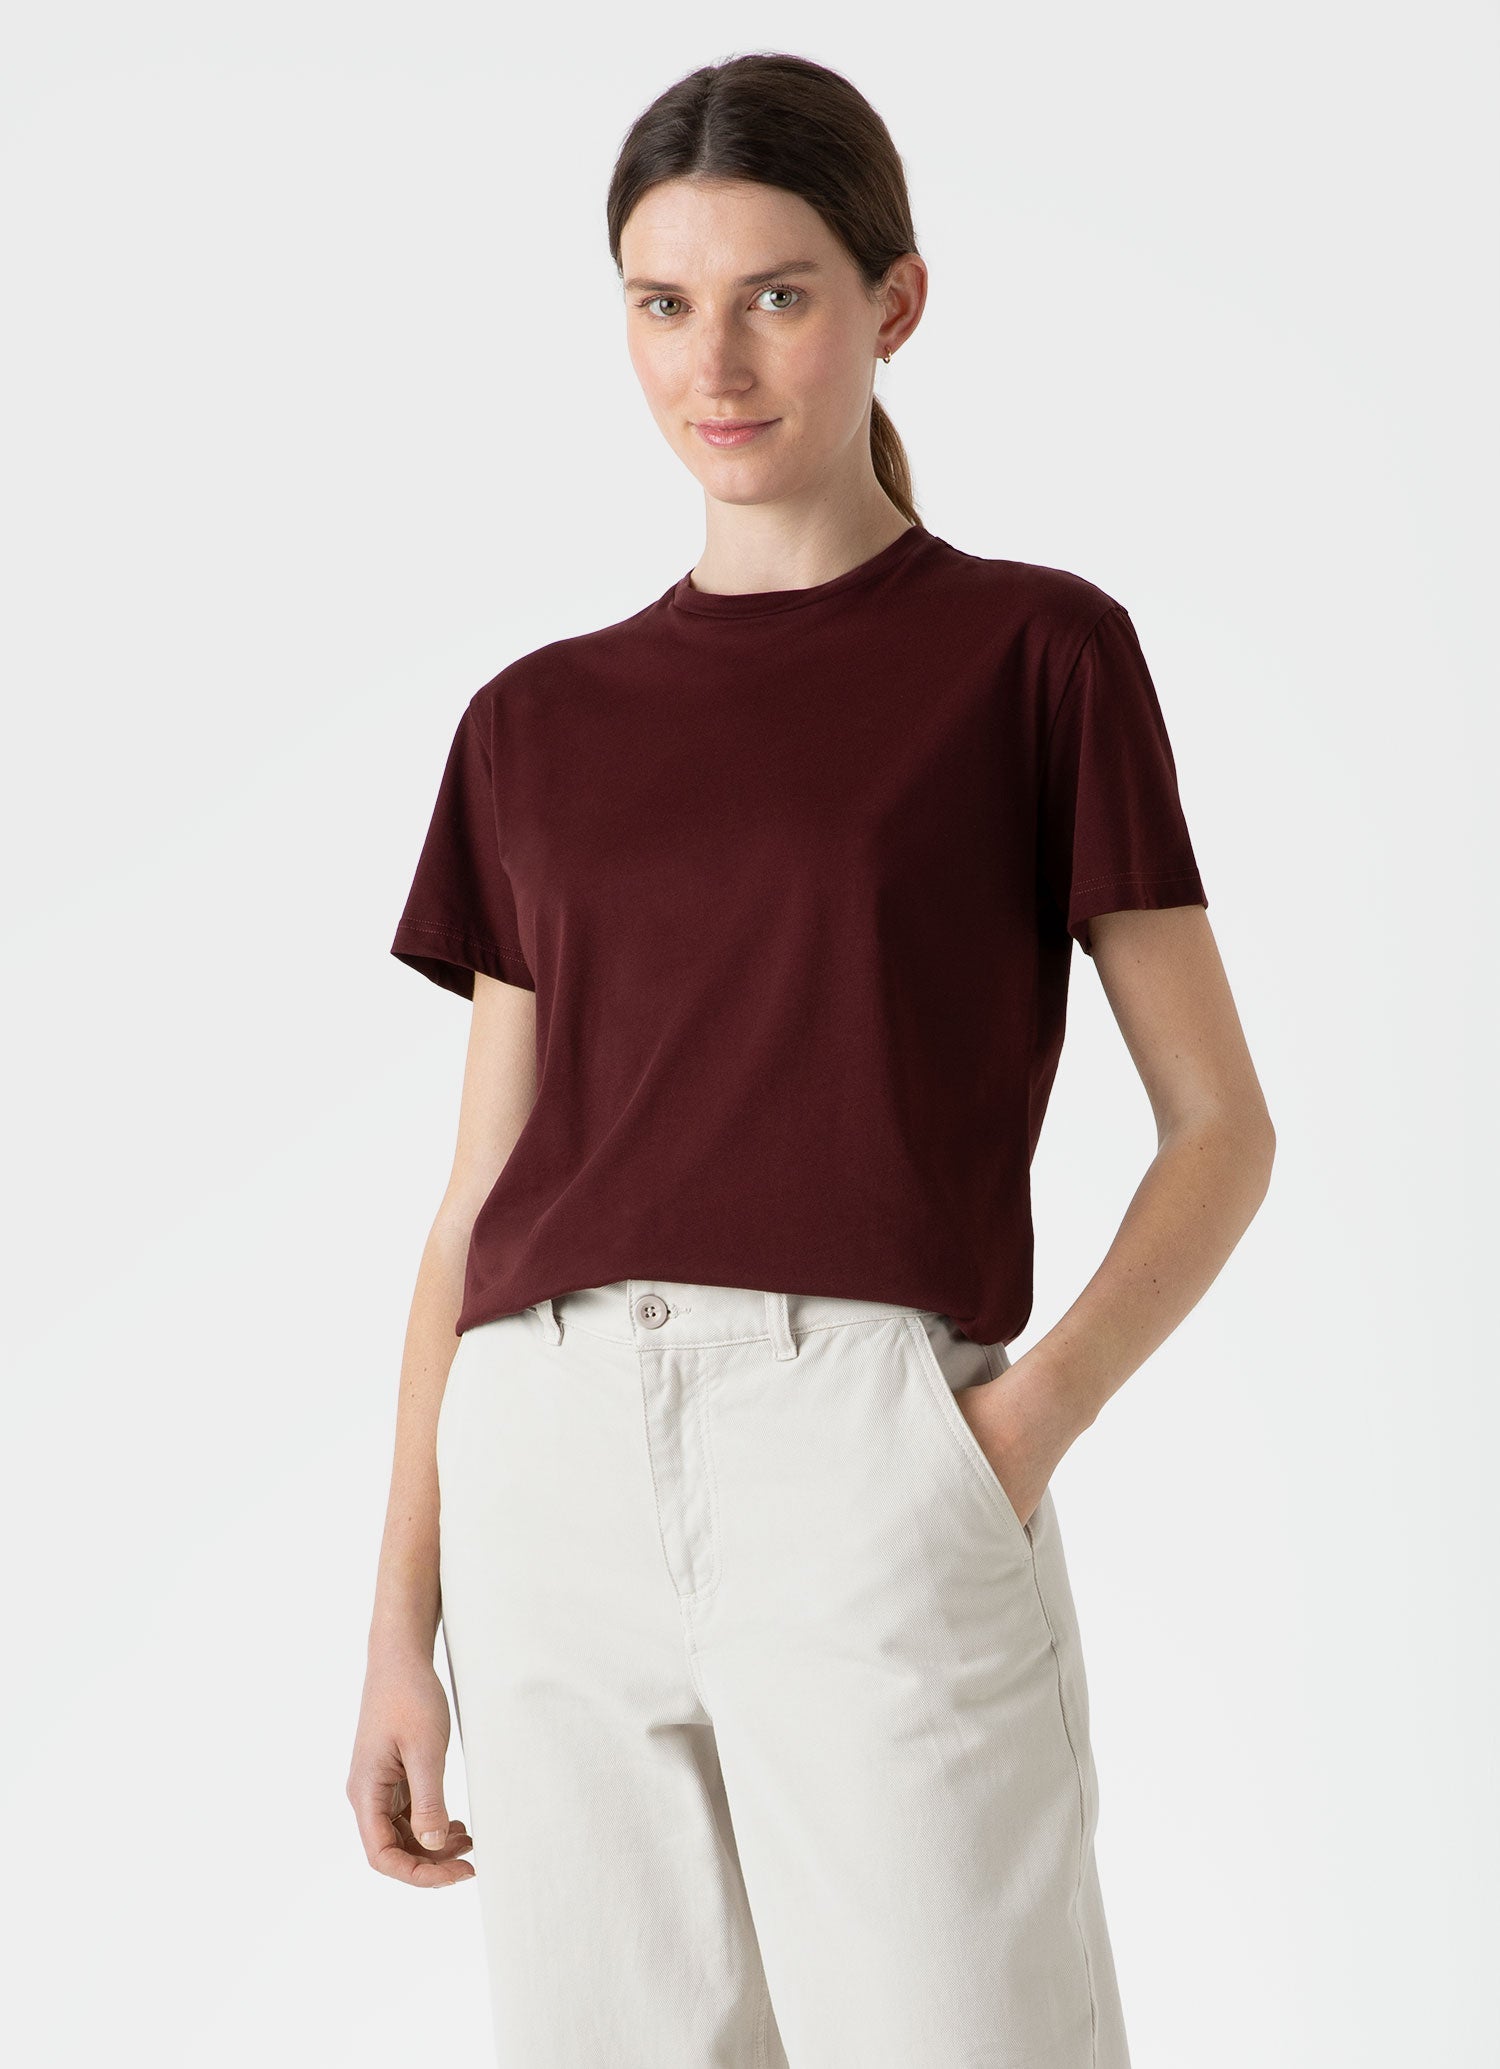 Women's Boy Fit T-shirt in Maroon